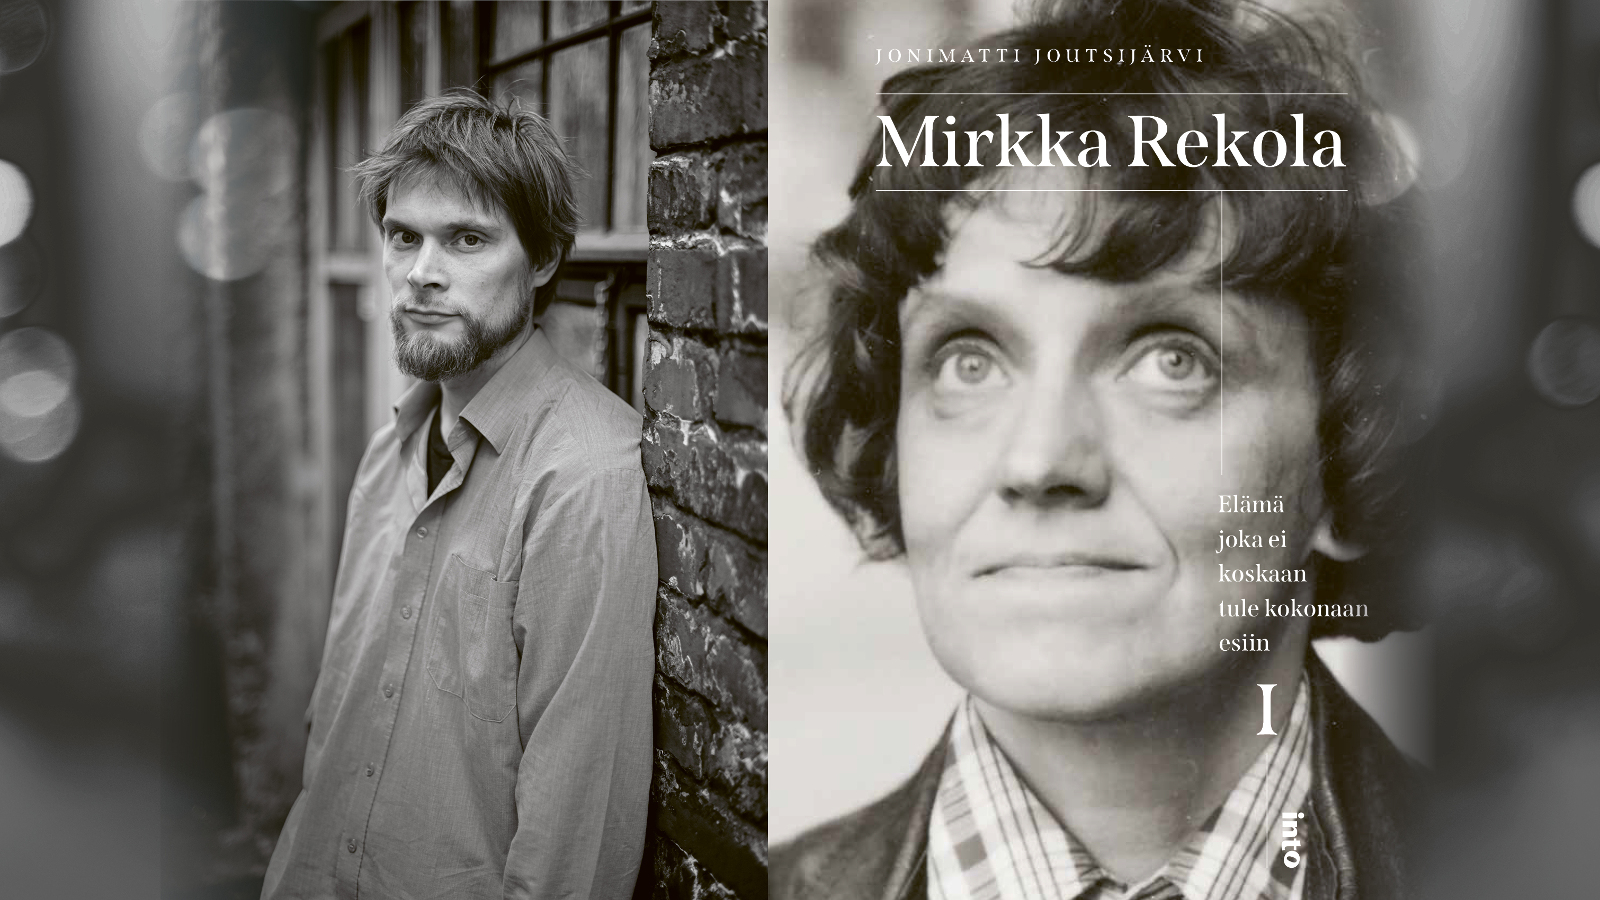 Kuvassa on vasemmalla Toni Joutsijärvi toisessa osassa kuvaa ja hän seisoo tiiliseinää vasten. Hänellä on kauluspaita päällään. Oikealla on kirjan kansi, jossa on Mirkka Rekolan kasvot ja nimi isolla sekä pienellä kirjan nimi. Kuva on musta-valkoinen.